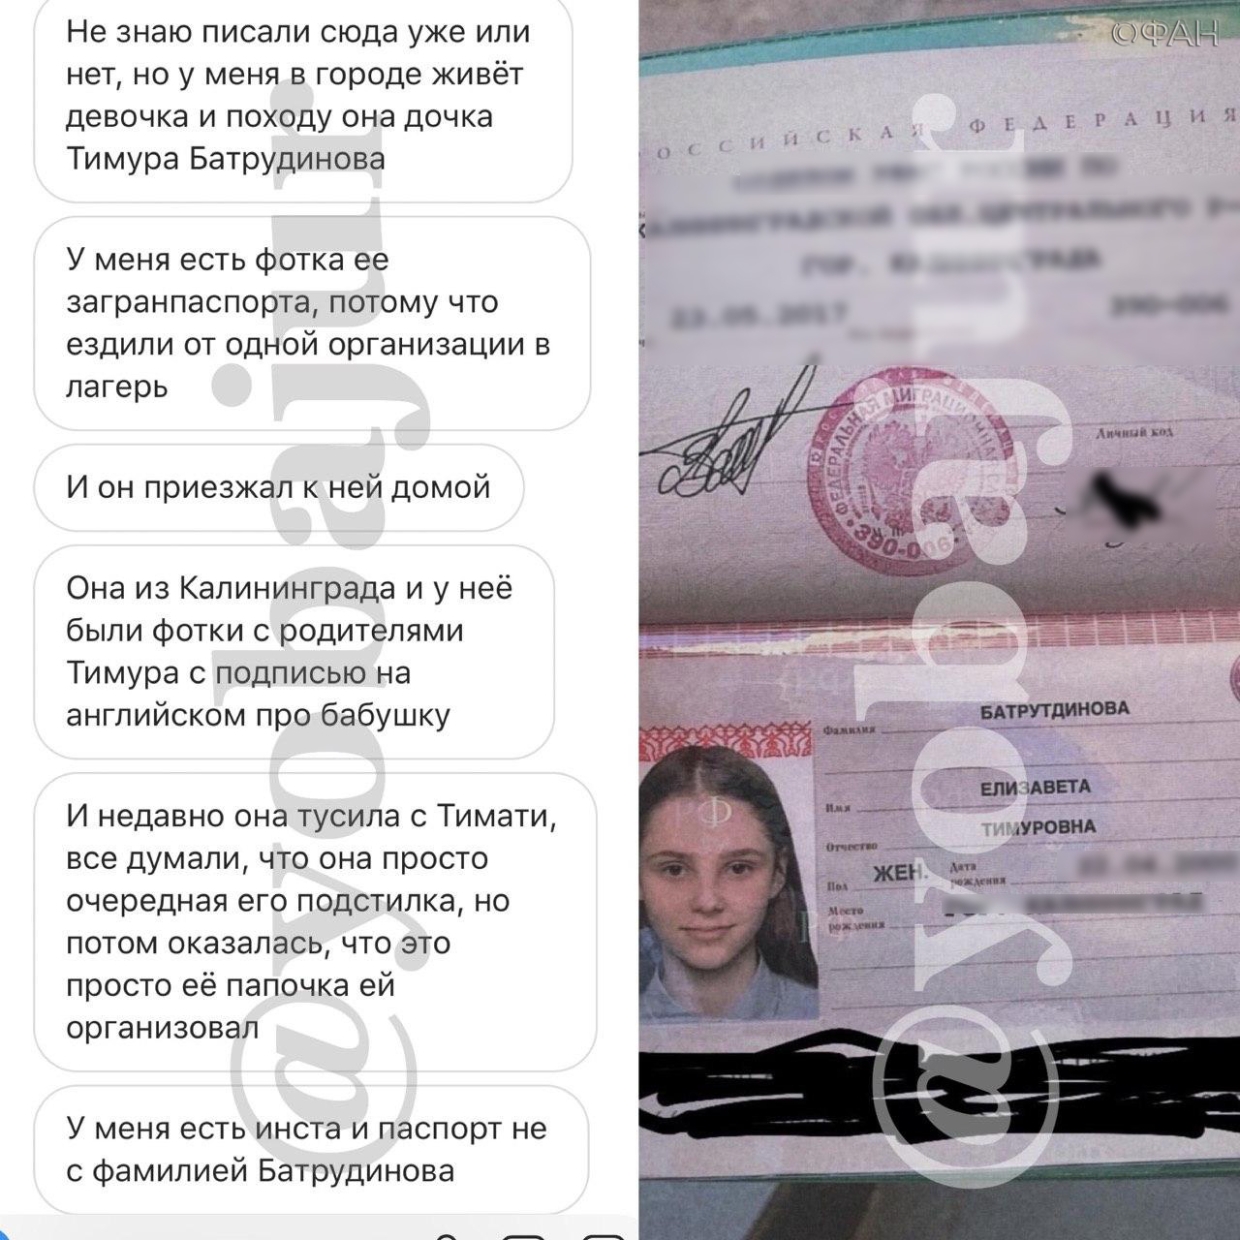 Анонимные источники сообщили о внебрачной дочери Батрутдинова